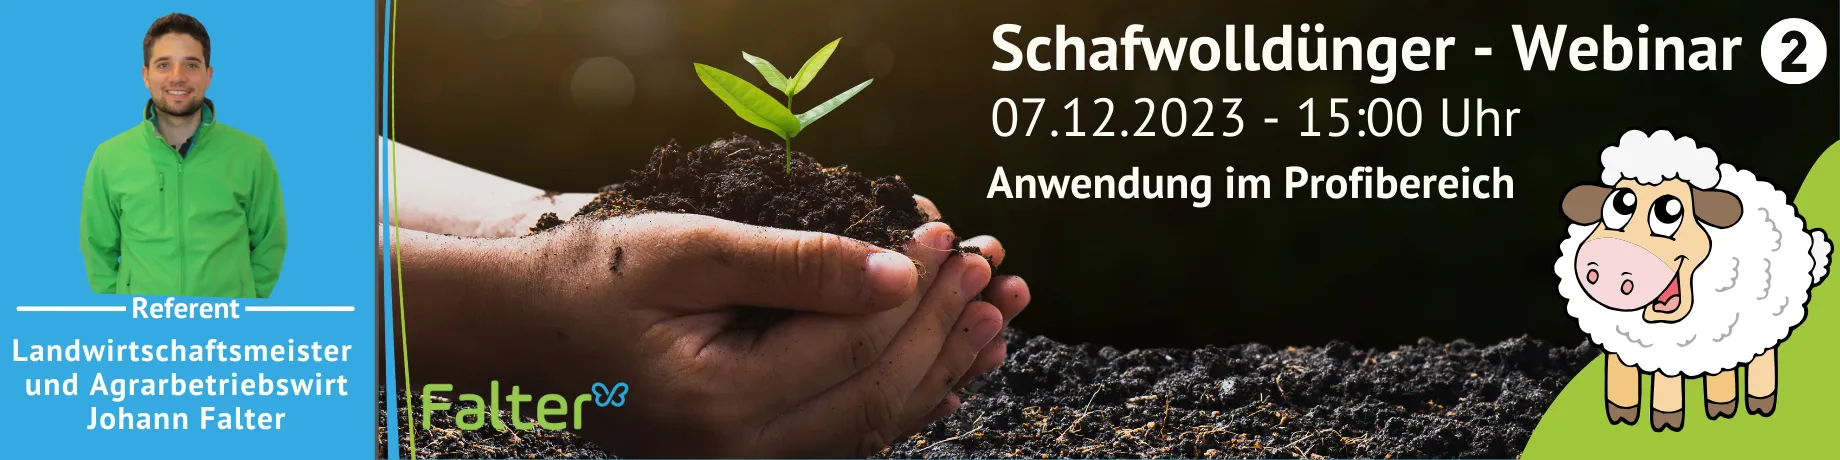 Schafwolldünger Webinar, Anwendung im Profibereich, 07.12.2023, 15:00, Referent Landwirtschaftsmeister und Agrarbetriebswirt Johann Falter